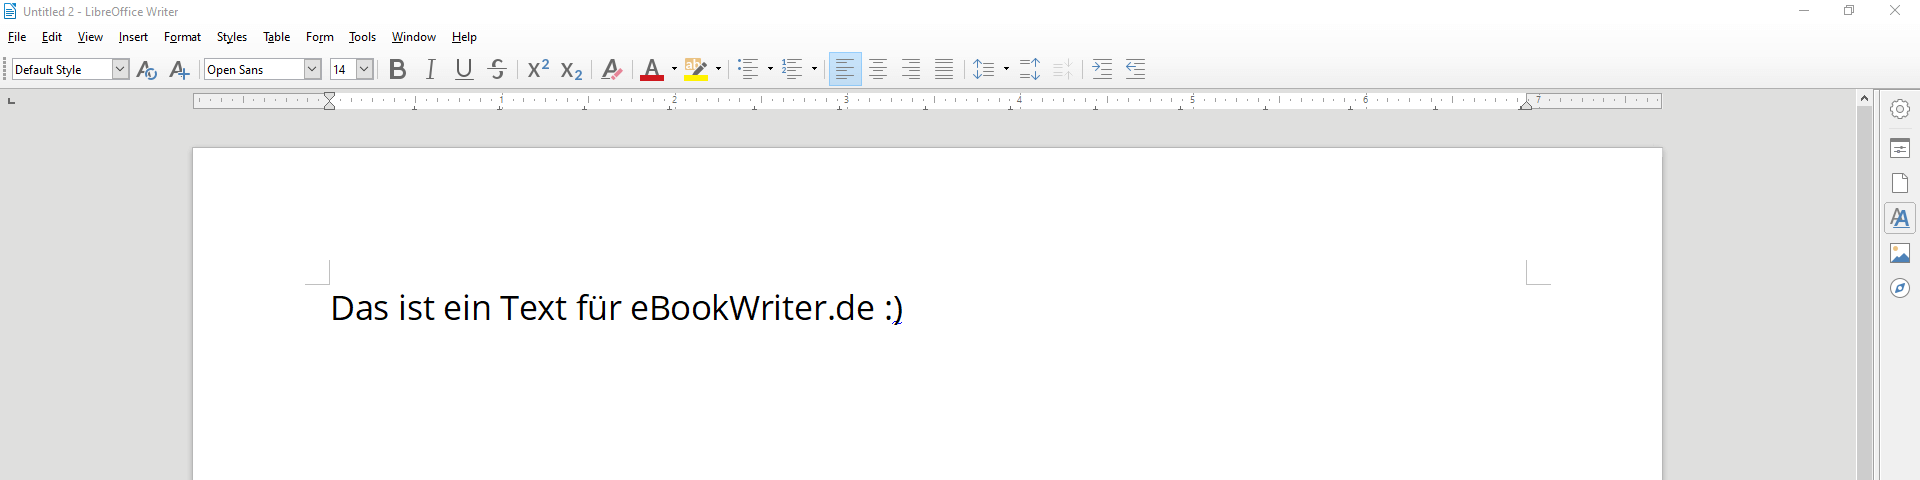 LibreOffice-Suite